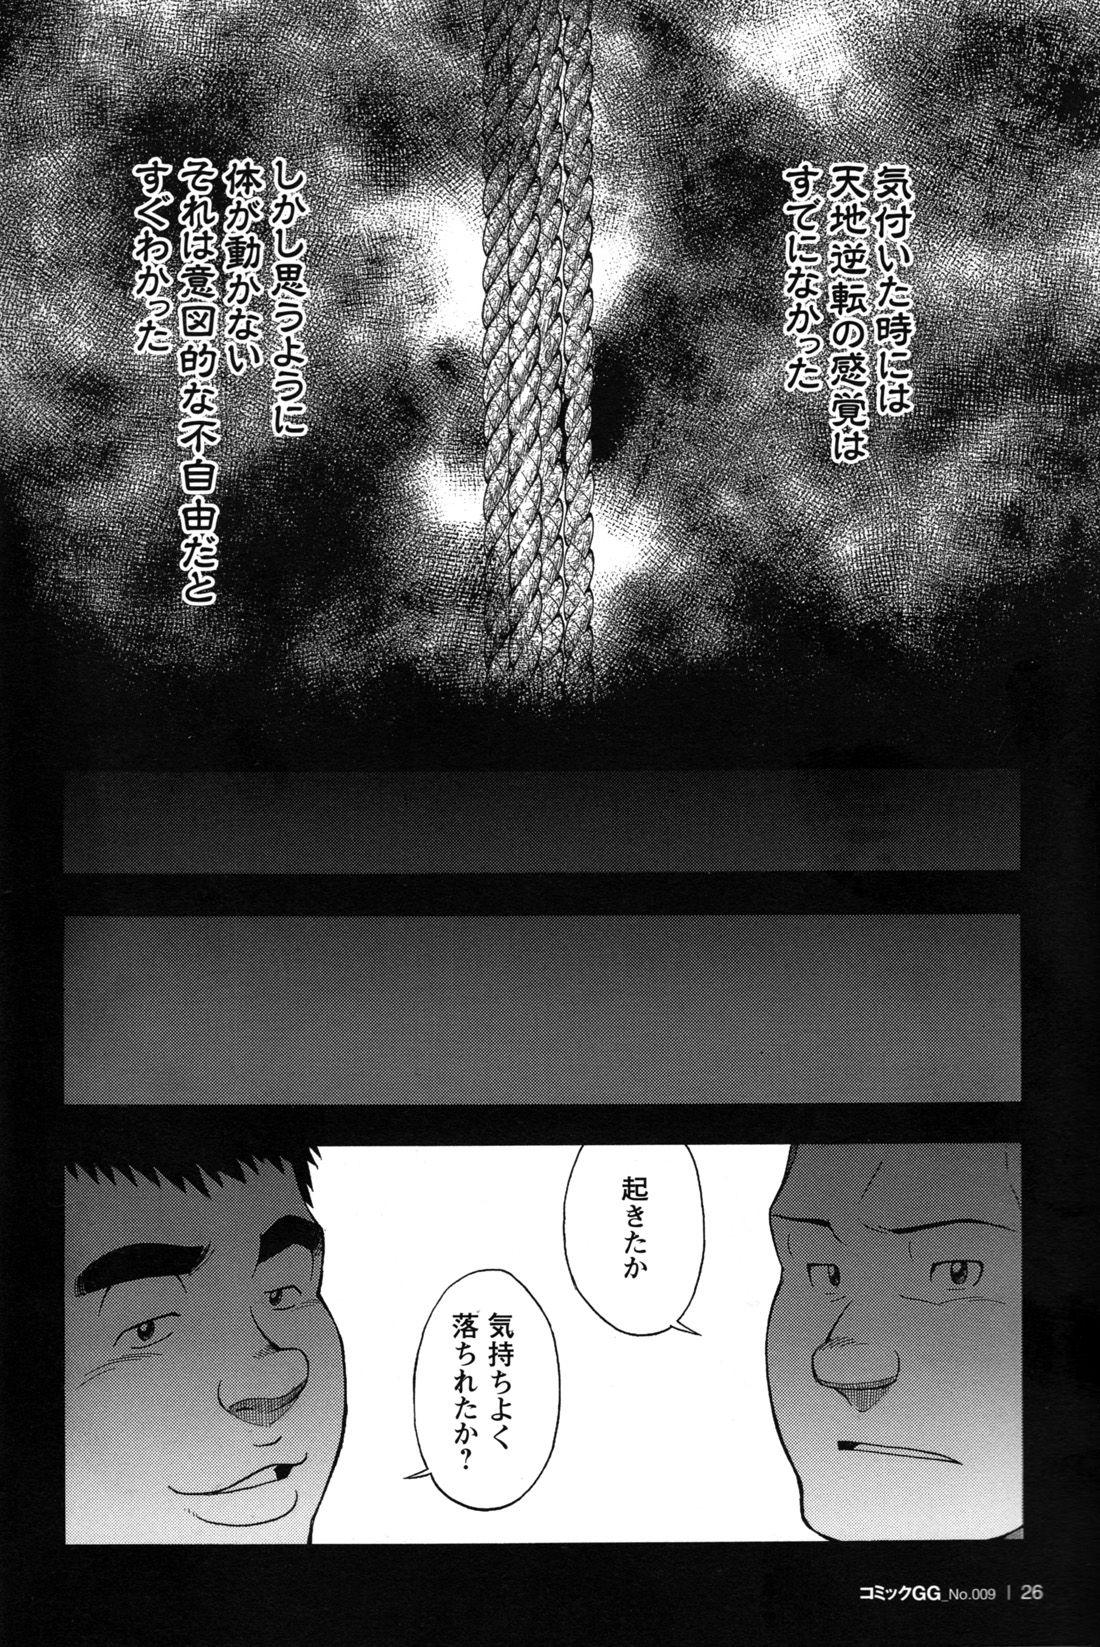 Comic G-men Gaho No.09 Gacchibi Zeme 27